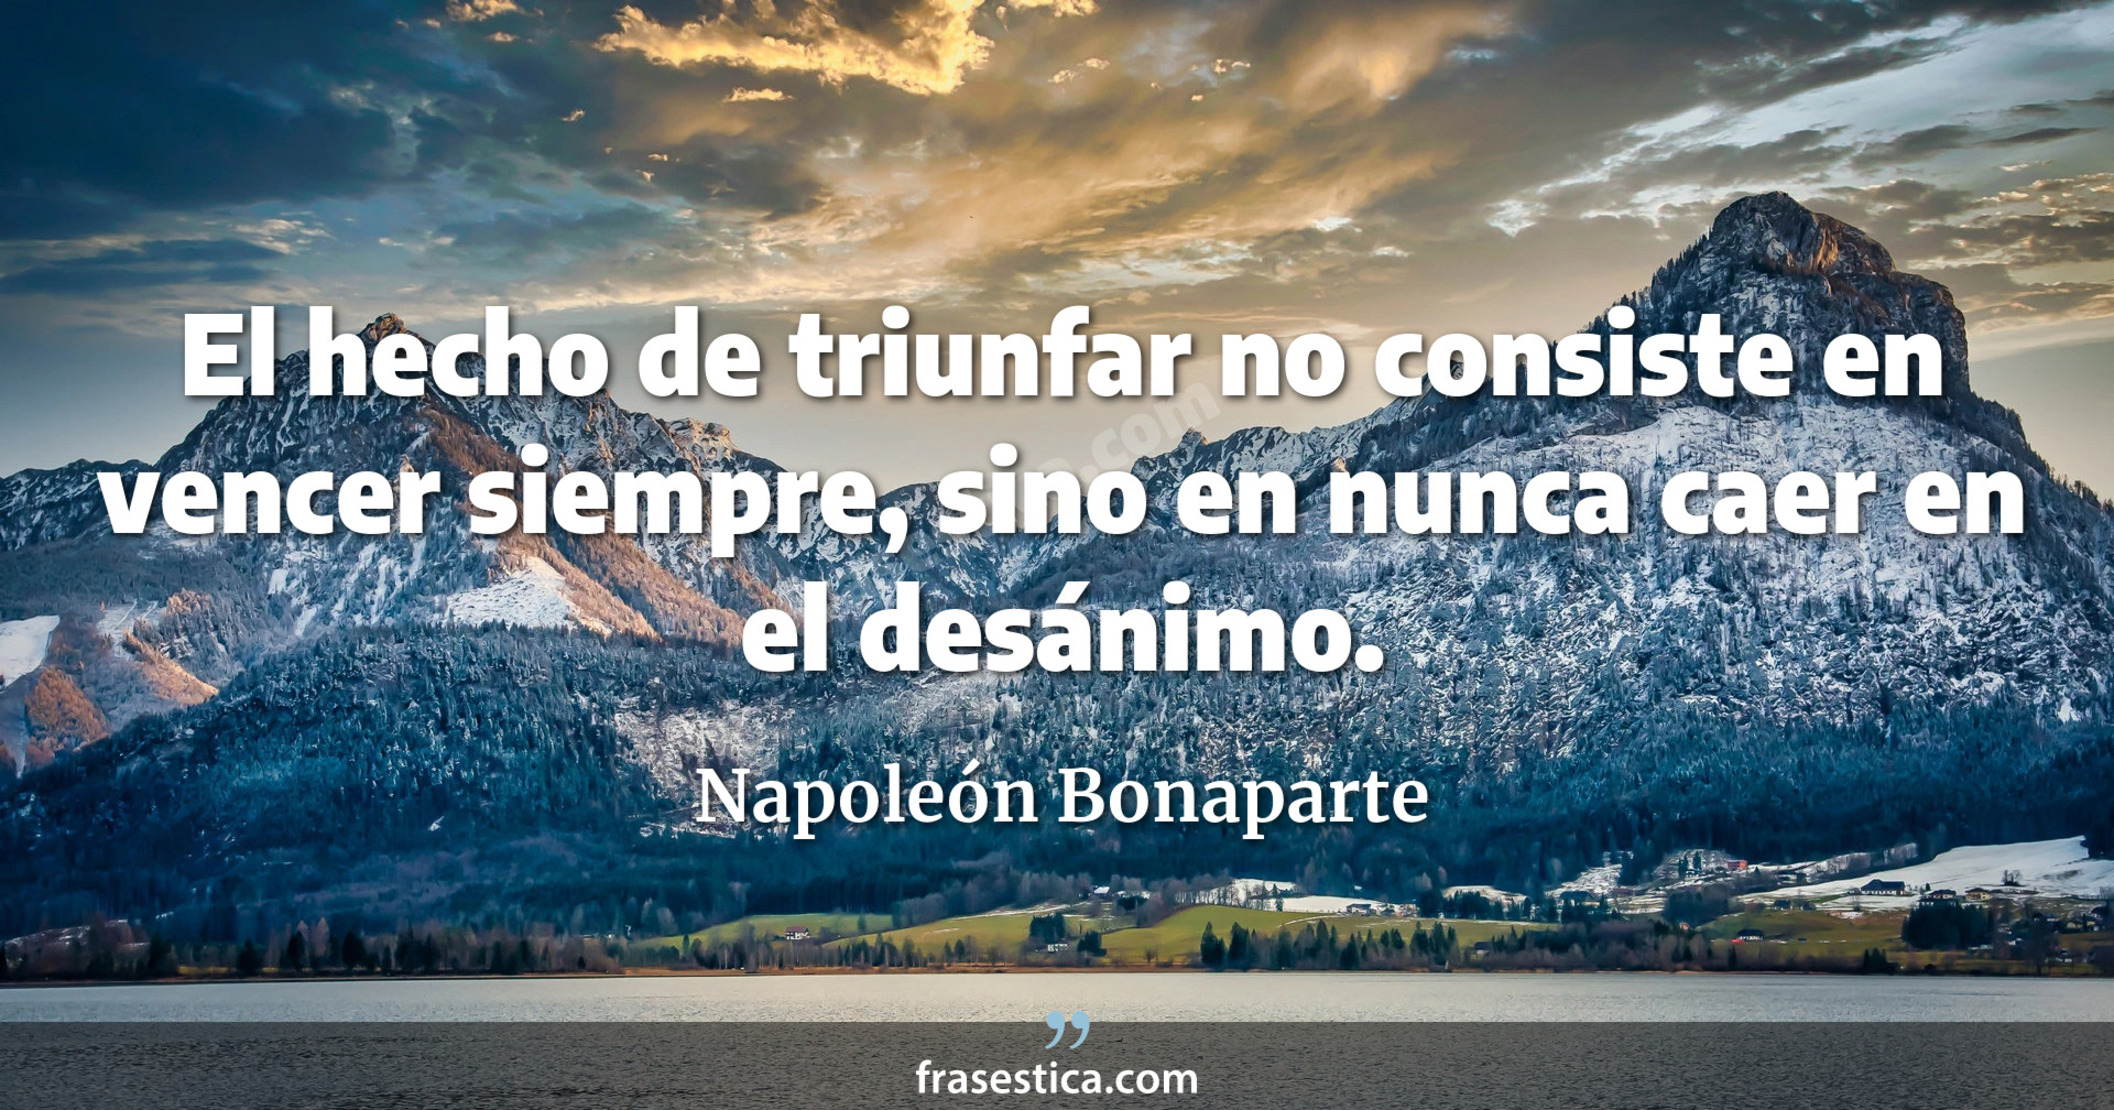 El hecho de triunfar no consiste en vencer siempre, sino en nunca caer en el desánimo. - Napoleón Bonaparte